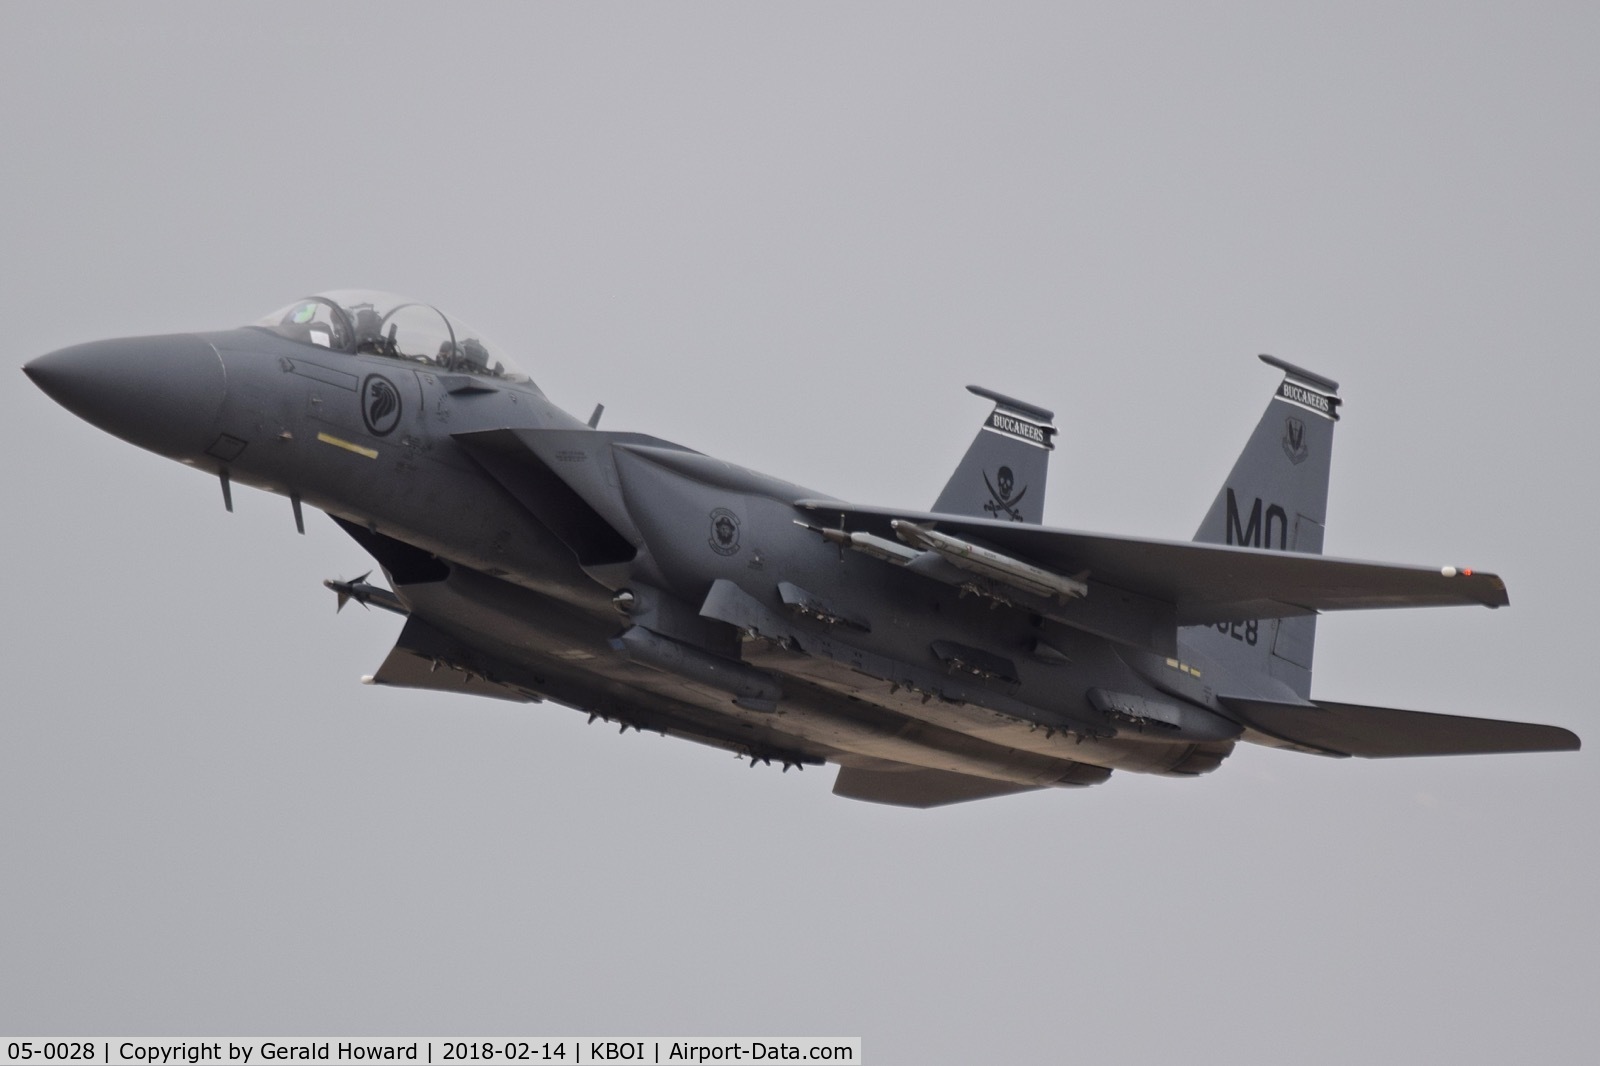 05-0028, 2005 Boeing F-15SG Strike Eagle C/N SG28, Low approach to RWY 10L.  428th Fighter Sq. 